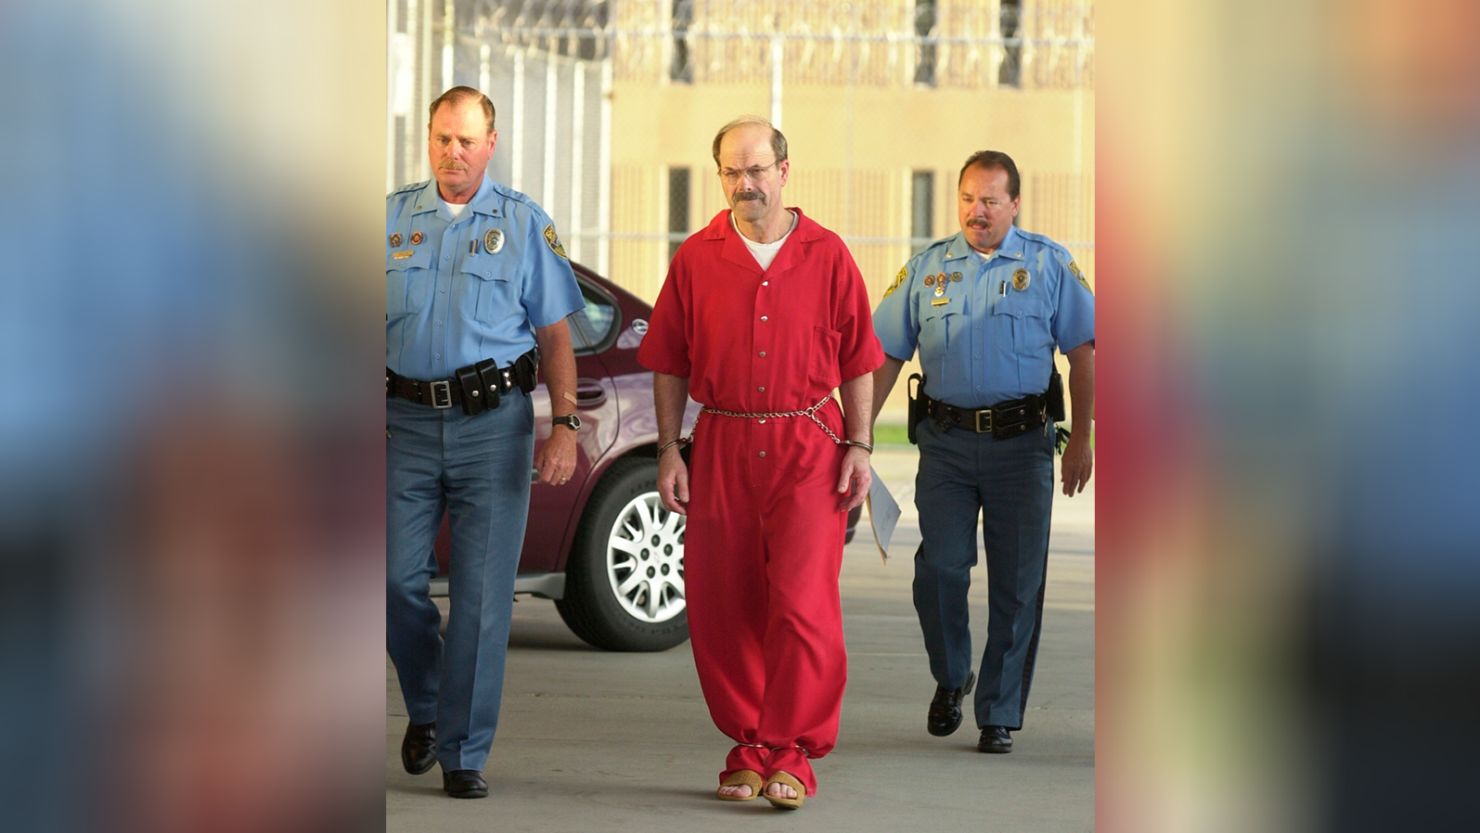 Convicted serial killer Dennis Rader walks into the El Dorado Correctional Facility on August 19, 2005, in El Dorado, Kansas. 